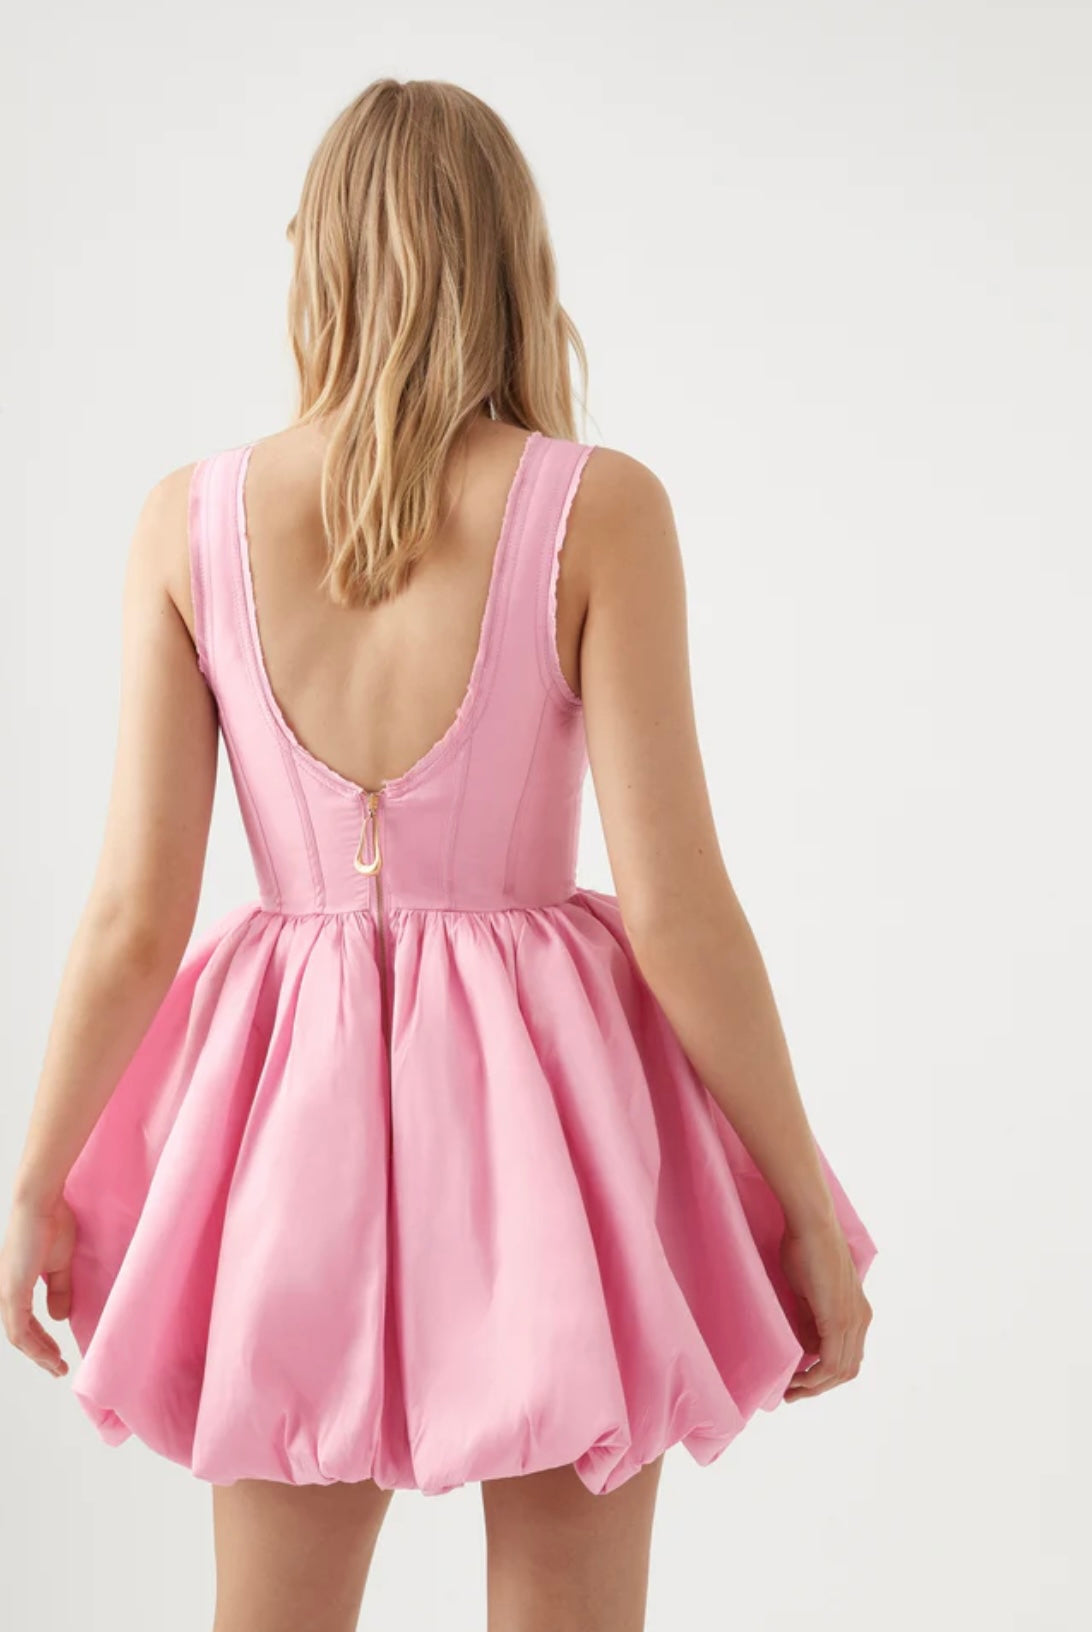 Aje - Suzette Bubble Mini Dress -Size 6